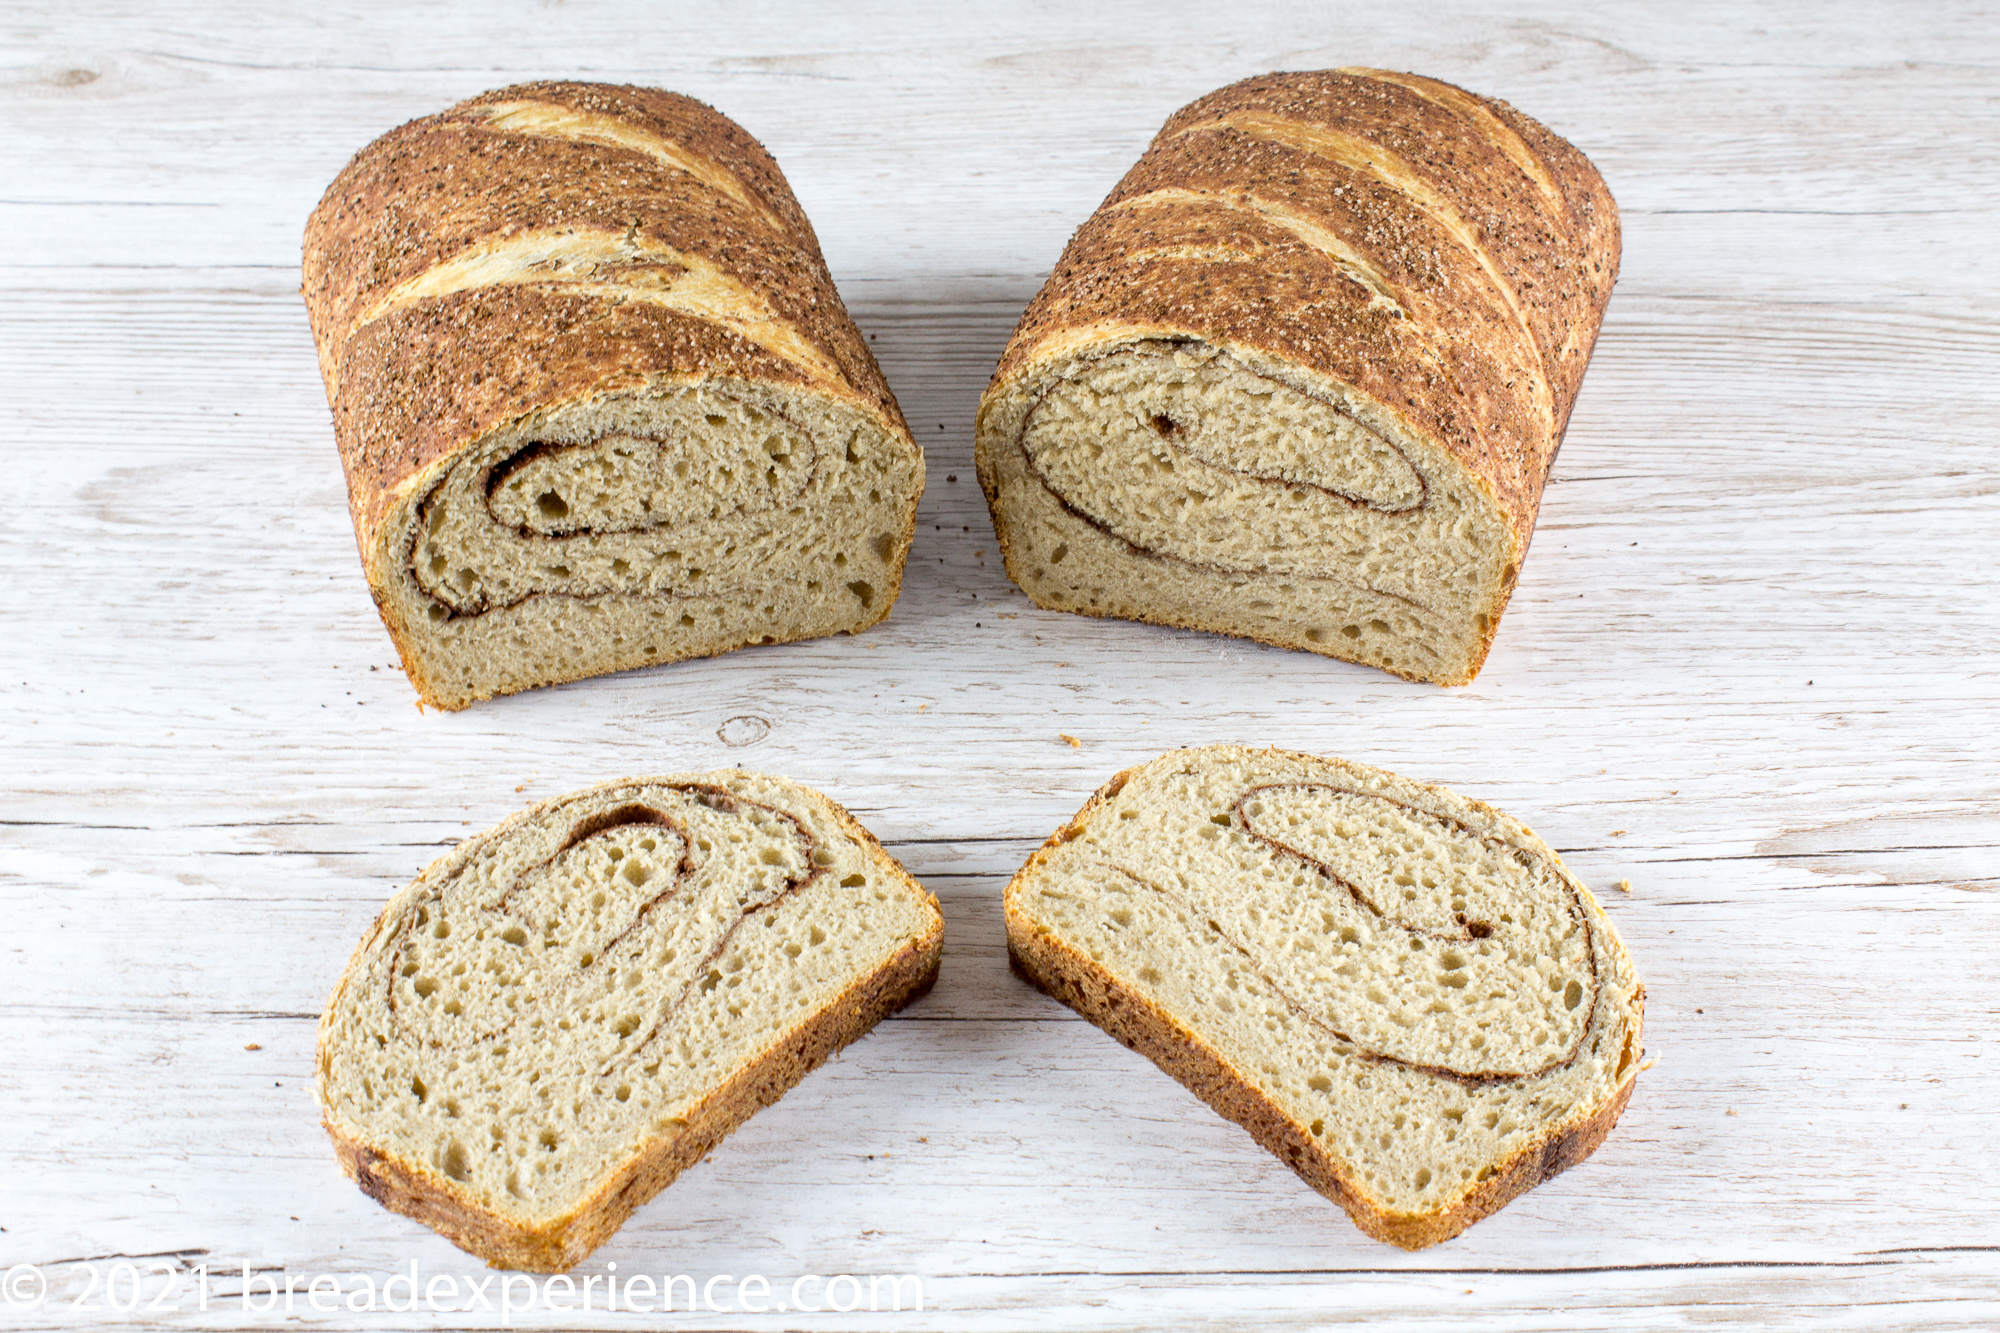 Pan de Café Coffee Bread with swirls